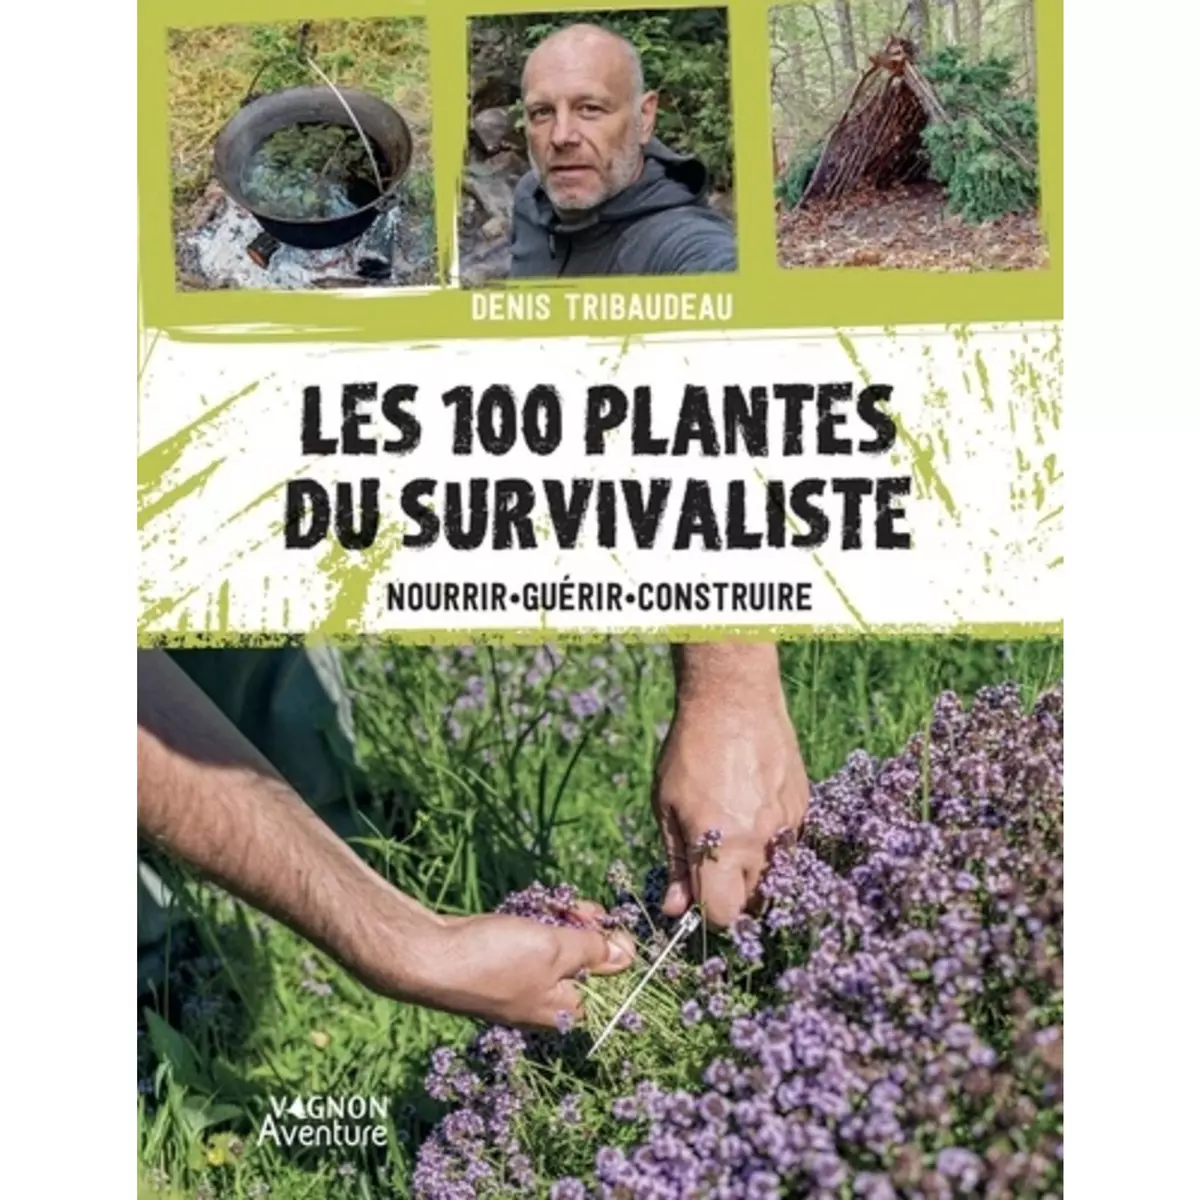  LES 100 PLANTES DU SURVIVALISTE. NOURRIR, GUERIR, CONSTRUIRE, Tribaudeau Denis